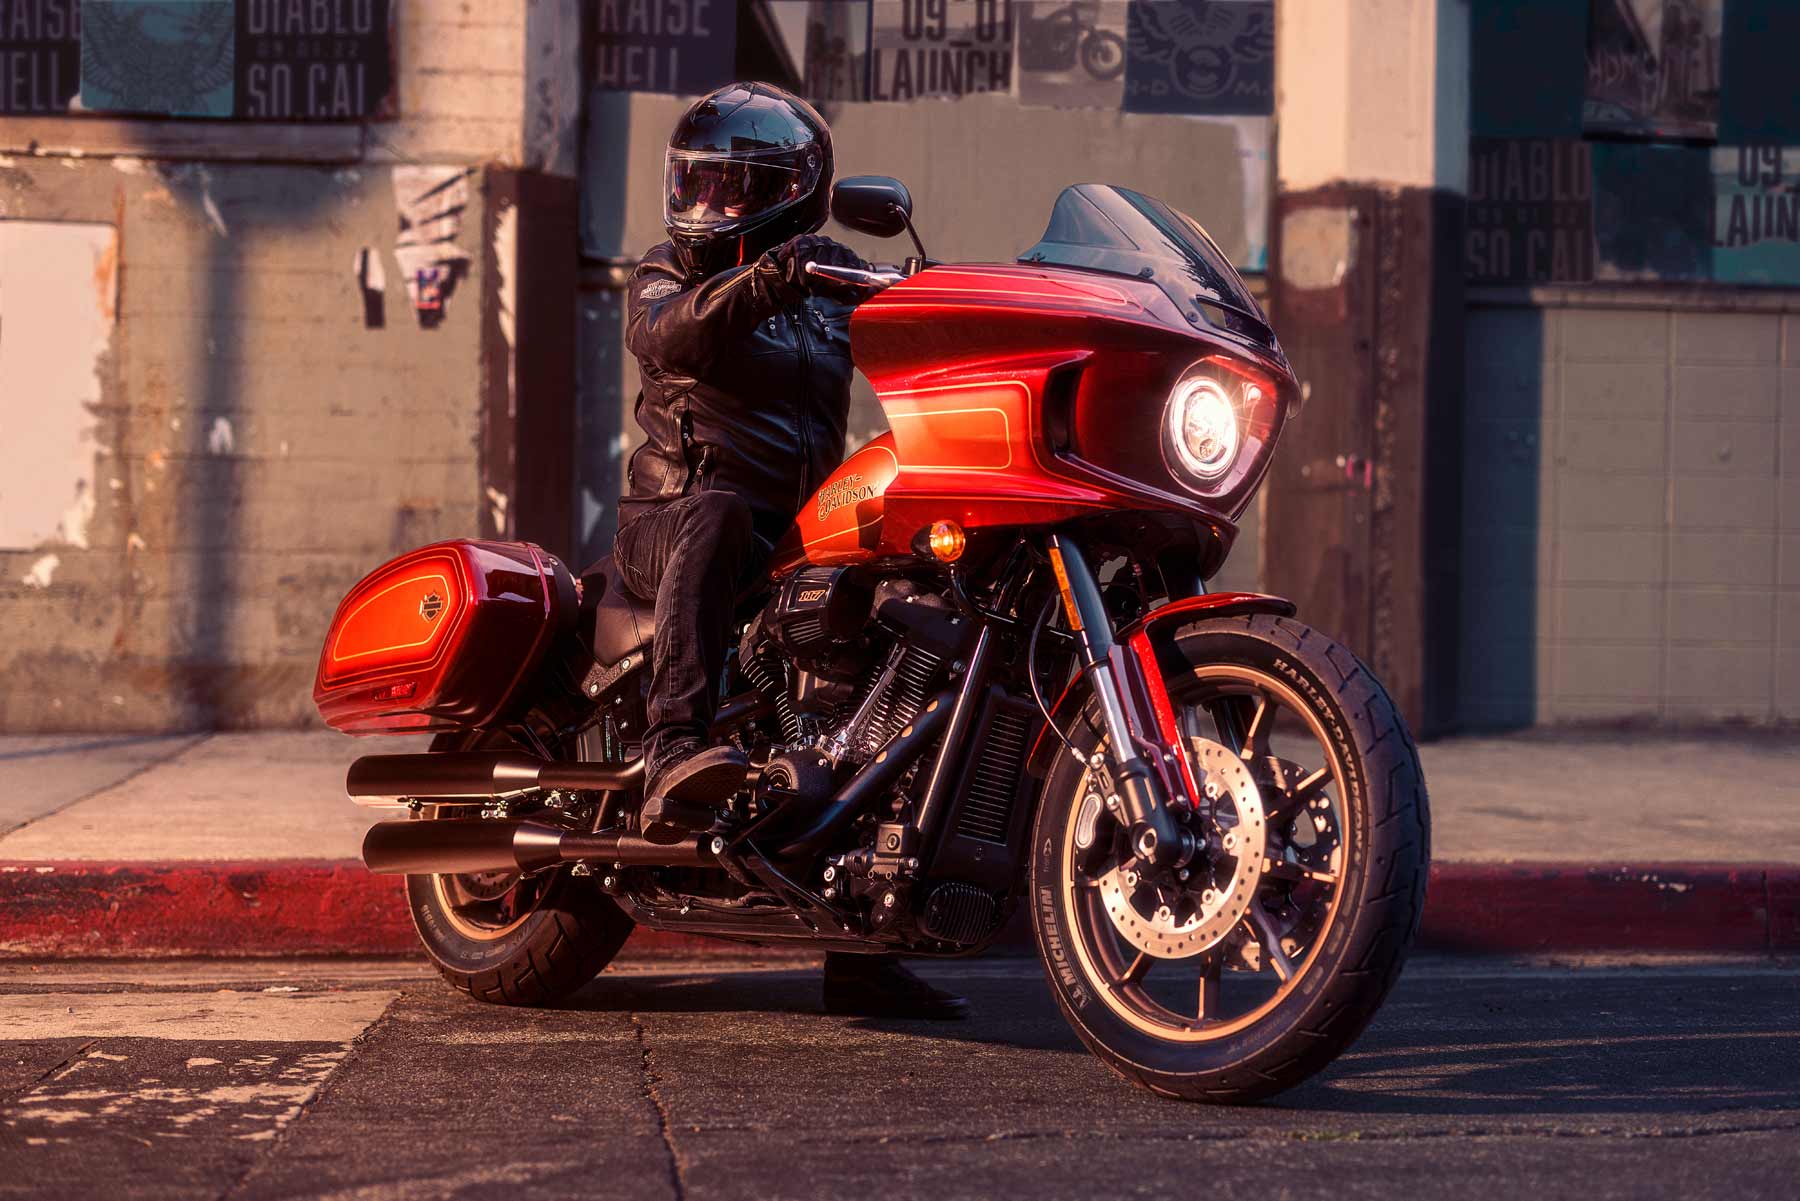 Le cose si fanno diaboliche alla Harley-Davidson